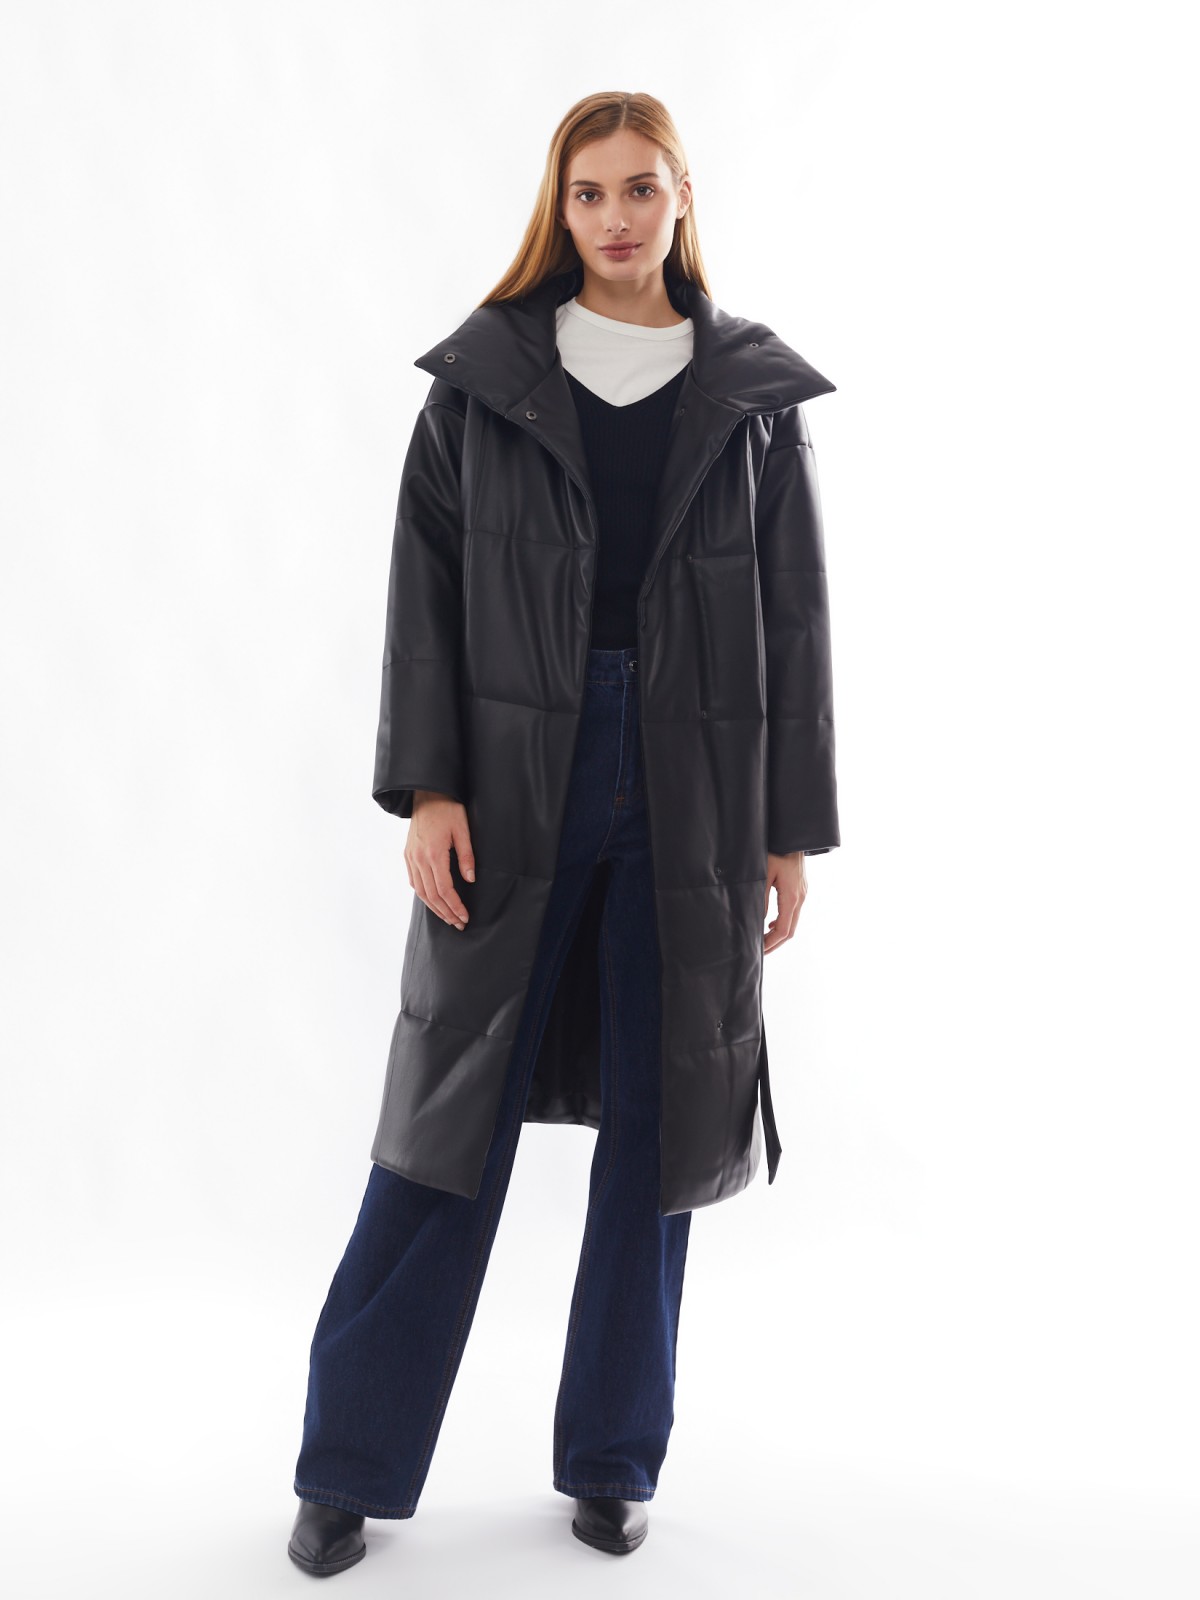 Тёплое пальто из экокожи на синтепоне с воротником-стойкой и поясом zolla 02412522N034, цвет черный, размер XS - фото 2